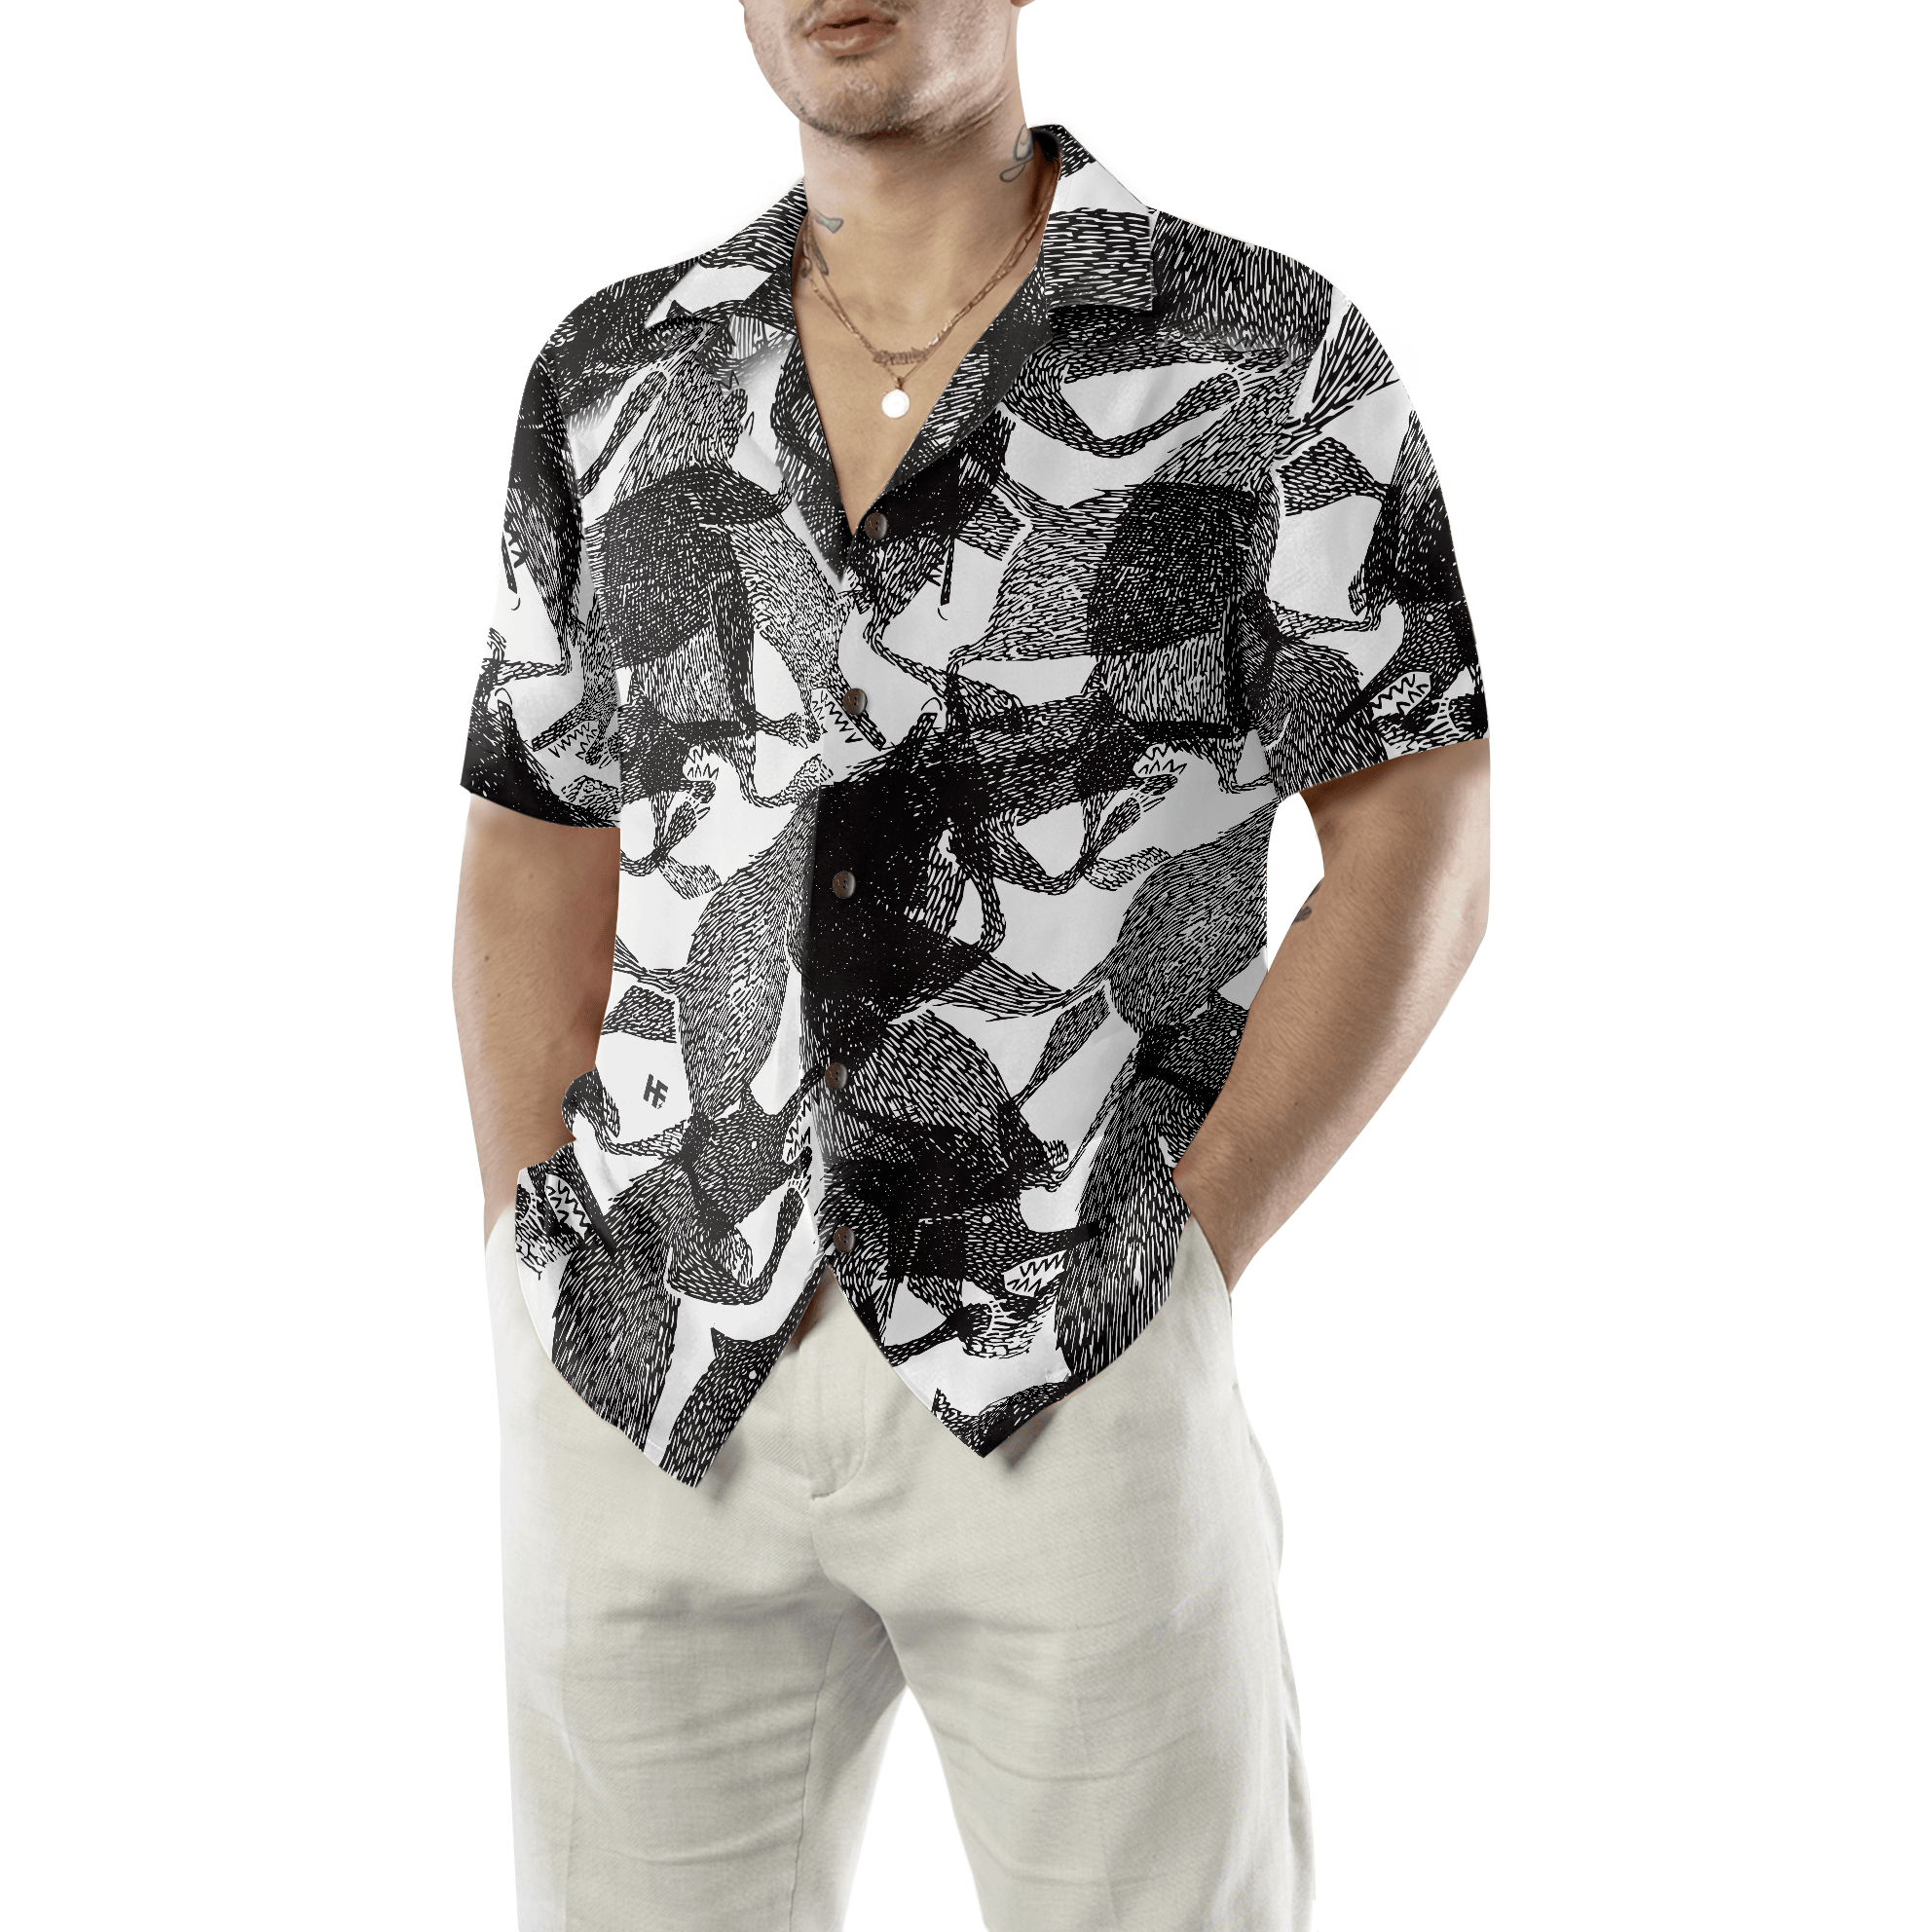 Big Bad Wolf Hawaiian Shirt